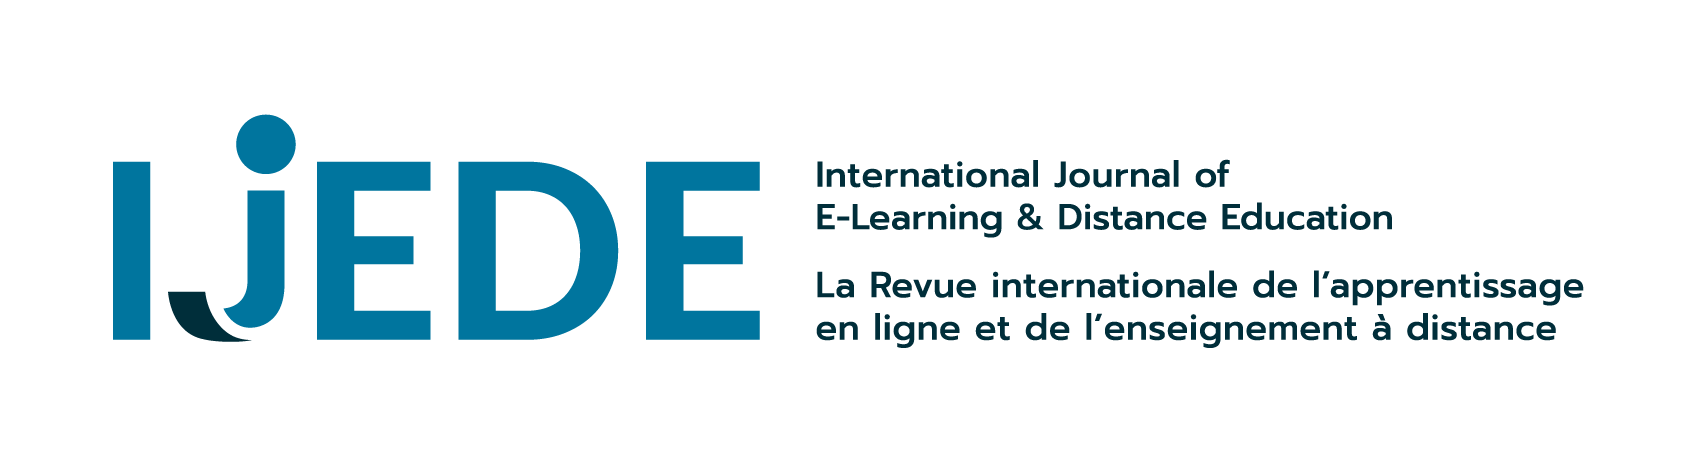 The International Journal of Online Learning and Distance Education - Le Journal international de l'apprentissage en ligne et de l'enseignement à distance